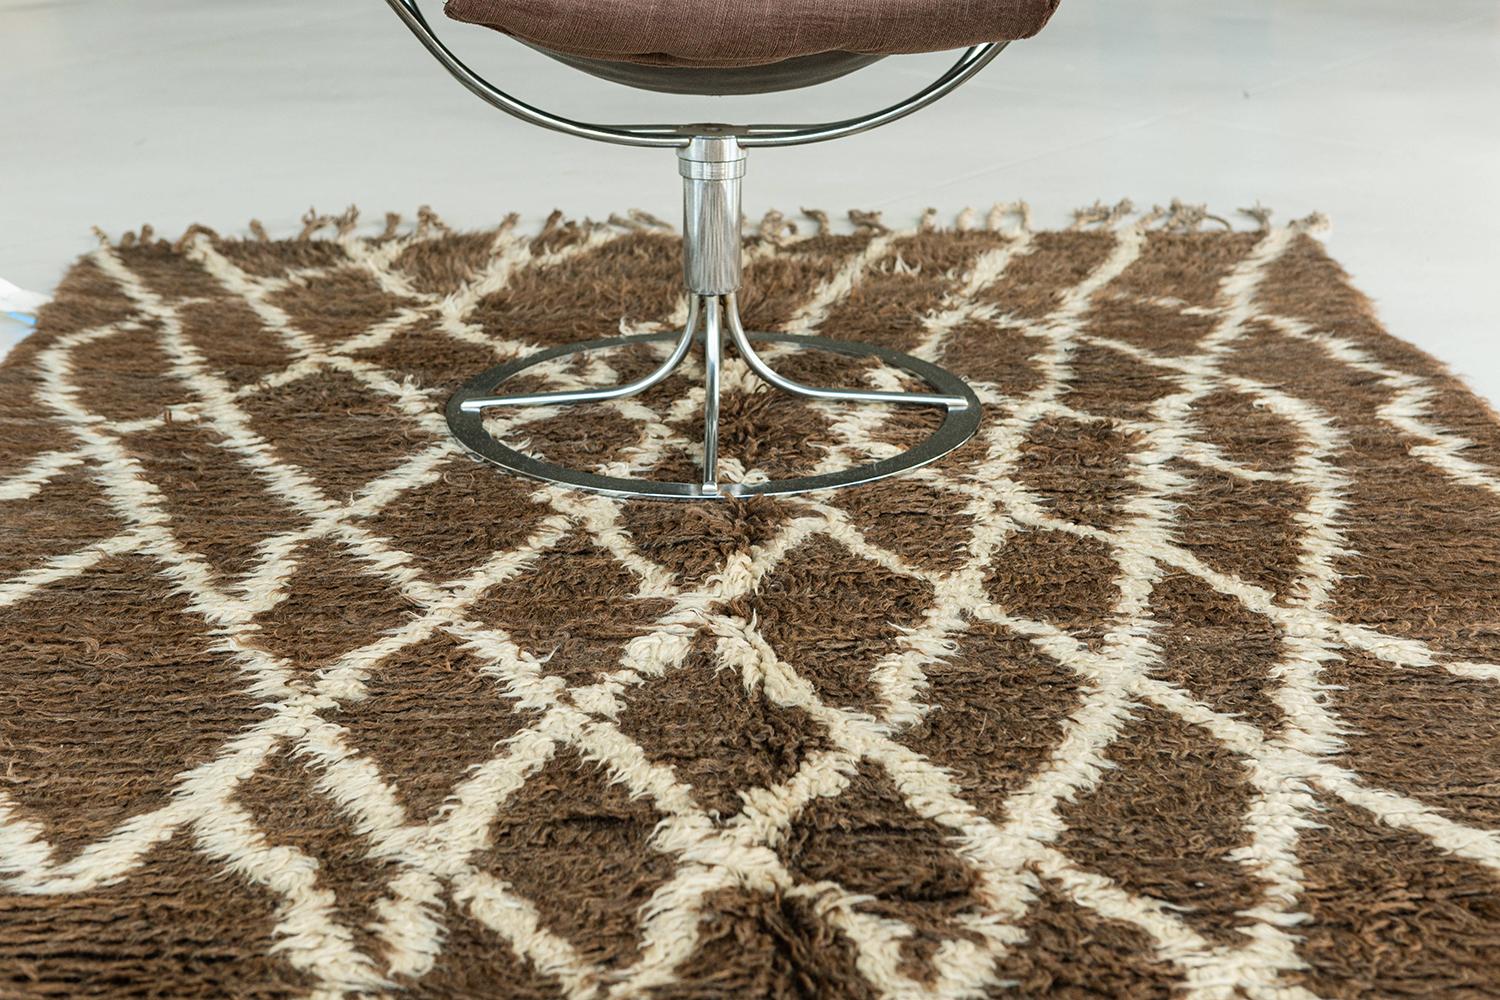 Der minimalistische Look des marokkanischen Teppichs Beni Ourain zeichnet sich durch ein elfenbeinfarbenes Rautenmuster mit verlängerten Seiten aus, das ein Rautenmuster in einem Tonfeld aufweist. Schlichter, aber sehr stilvoller Teppich mit